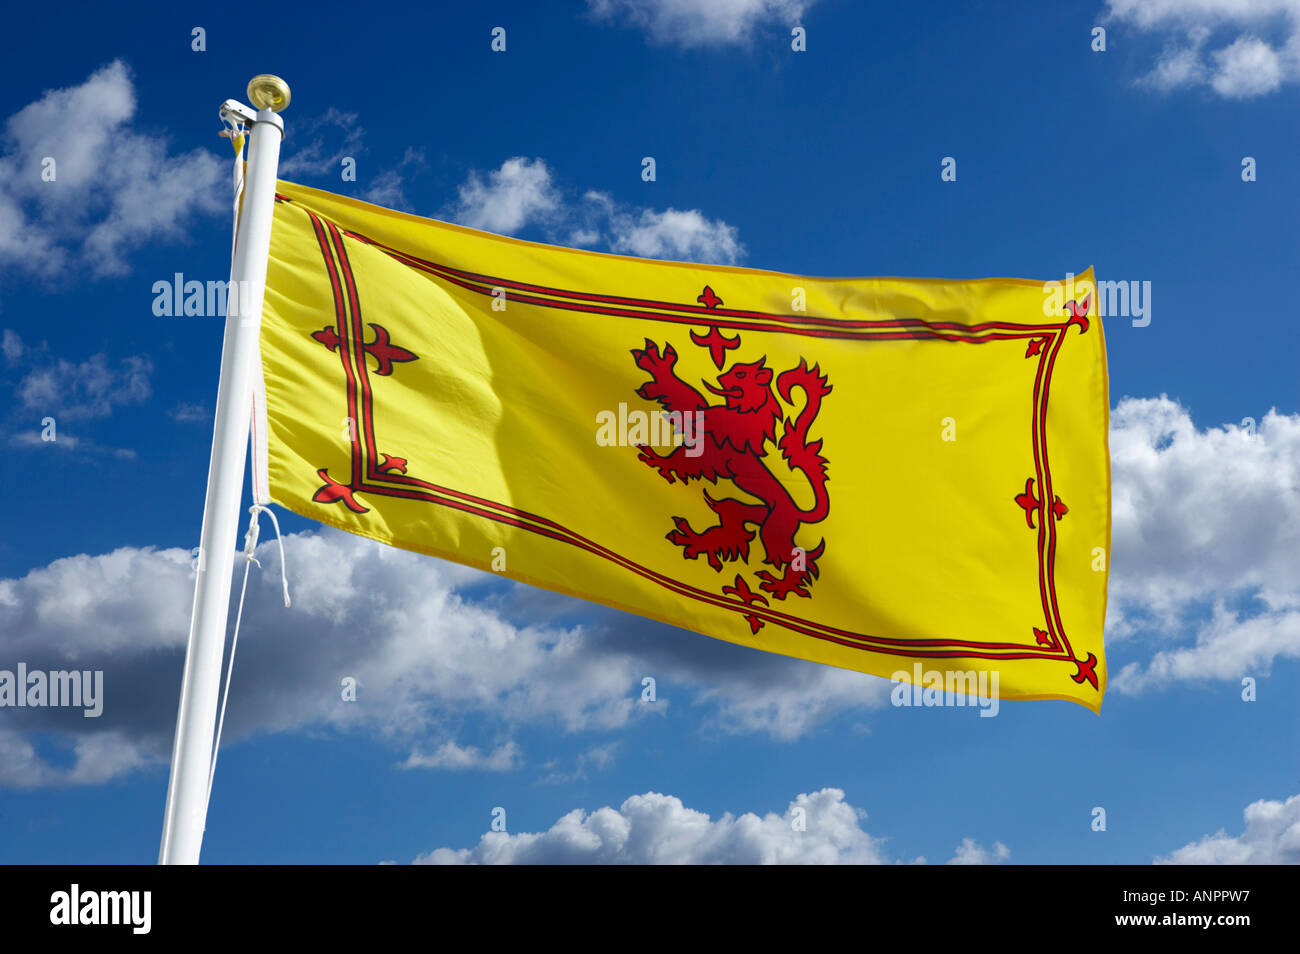 SCOTTISH  NATIONAL FLAG Stock Photo